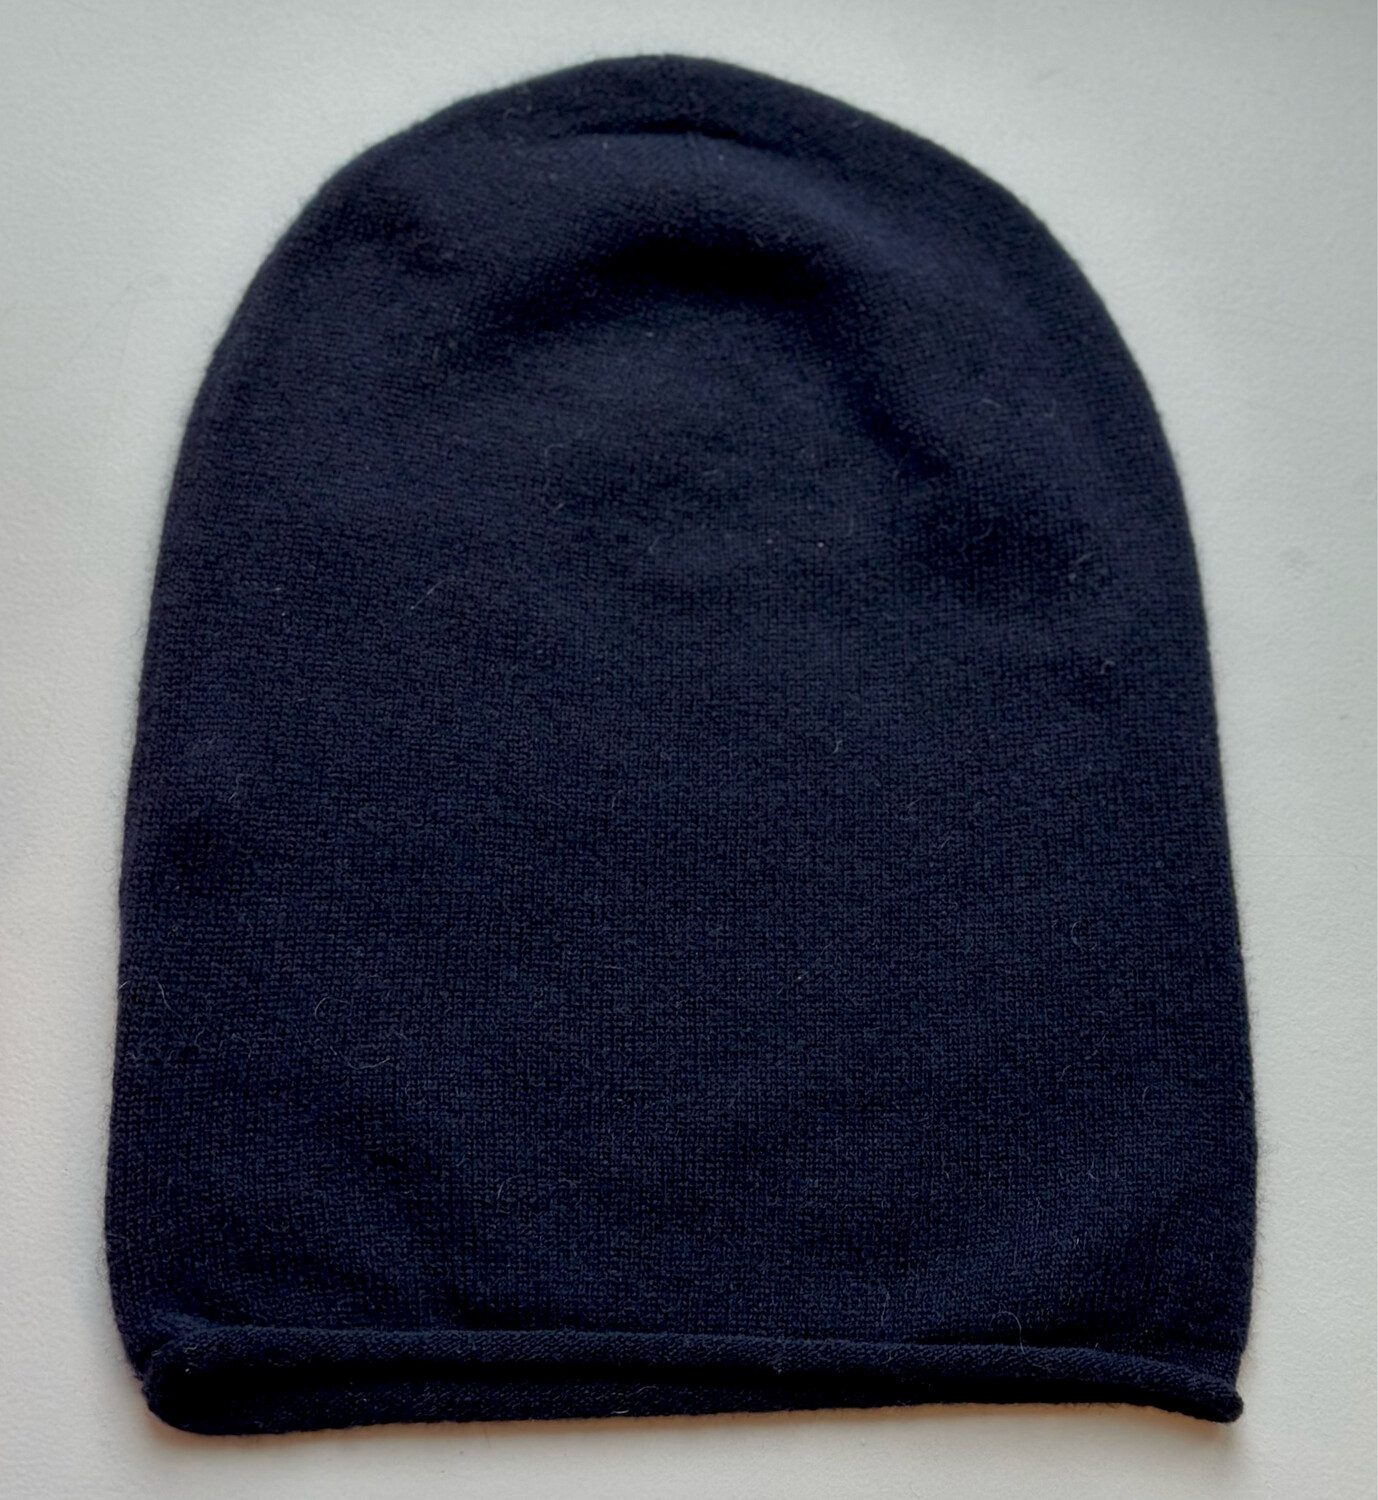 Dark blue cashmere hat